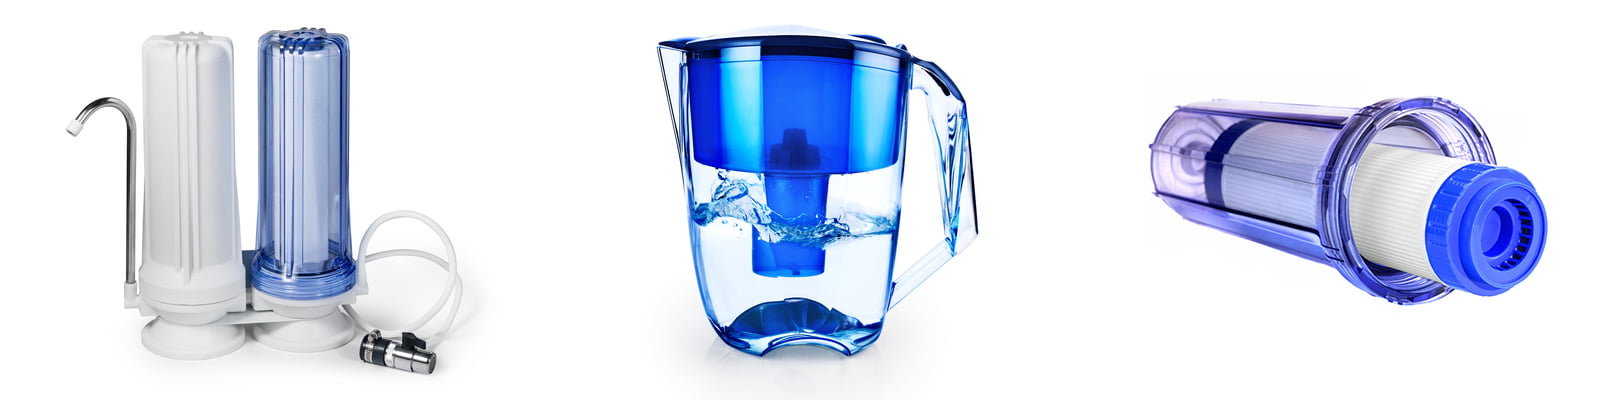 3 Water Filter Types